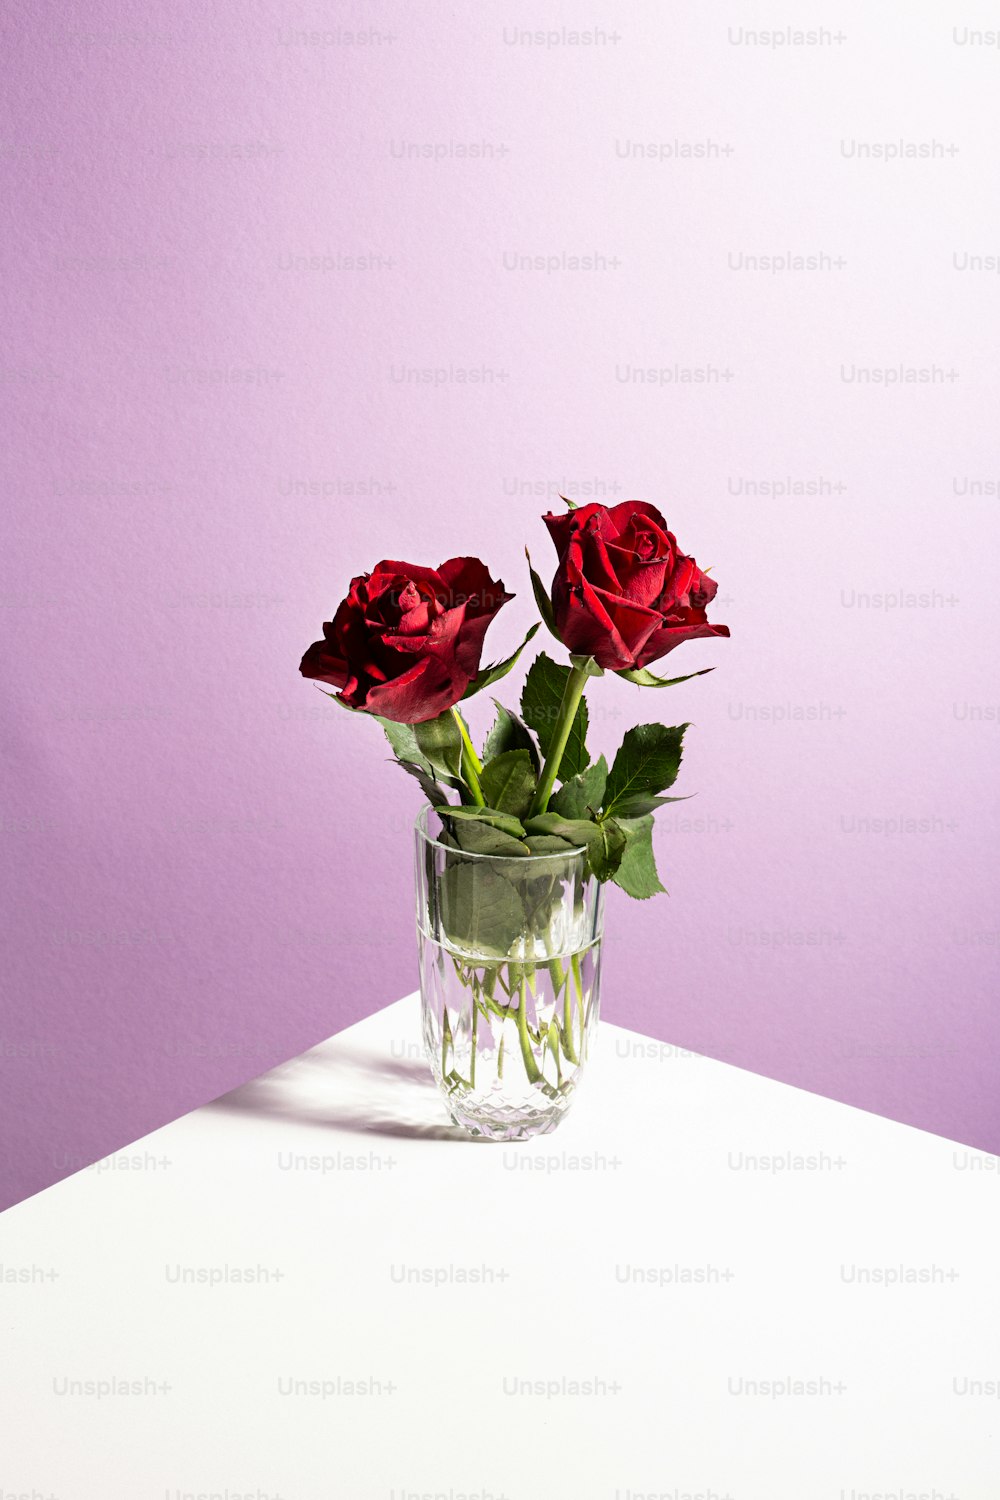 Rose In Un Vaso Immagini  Scarica immagini gratuite su Unsplash